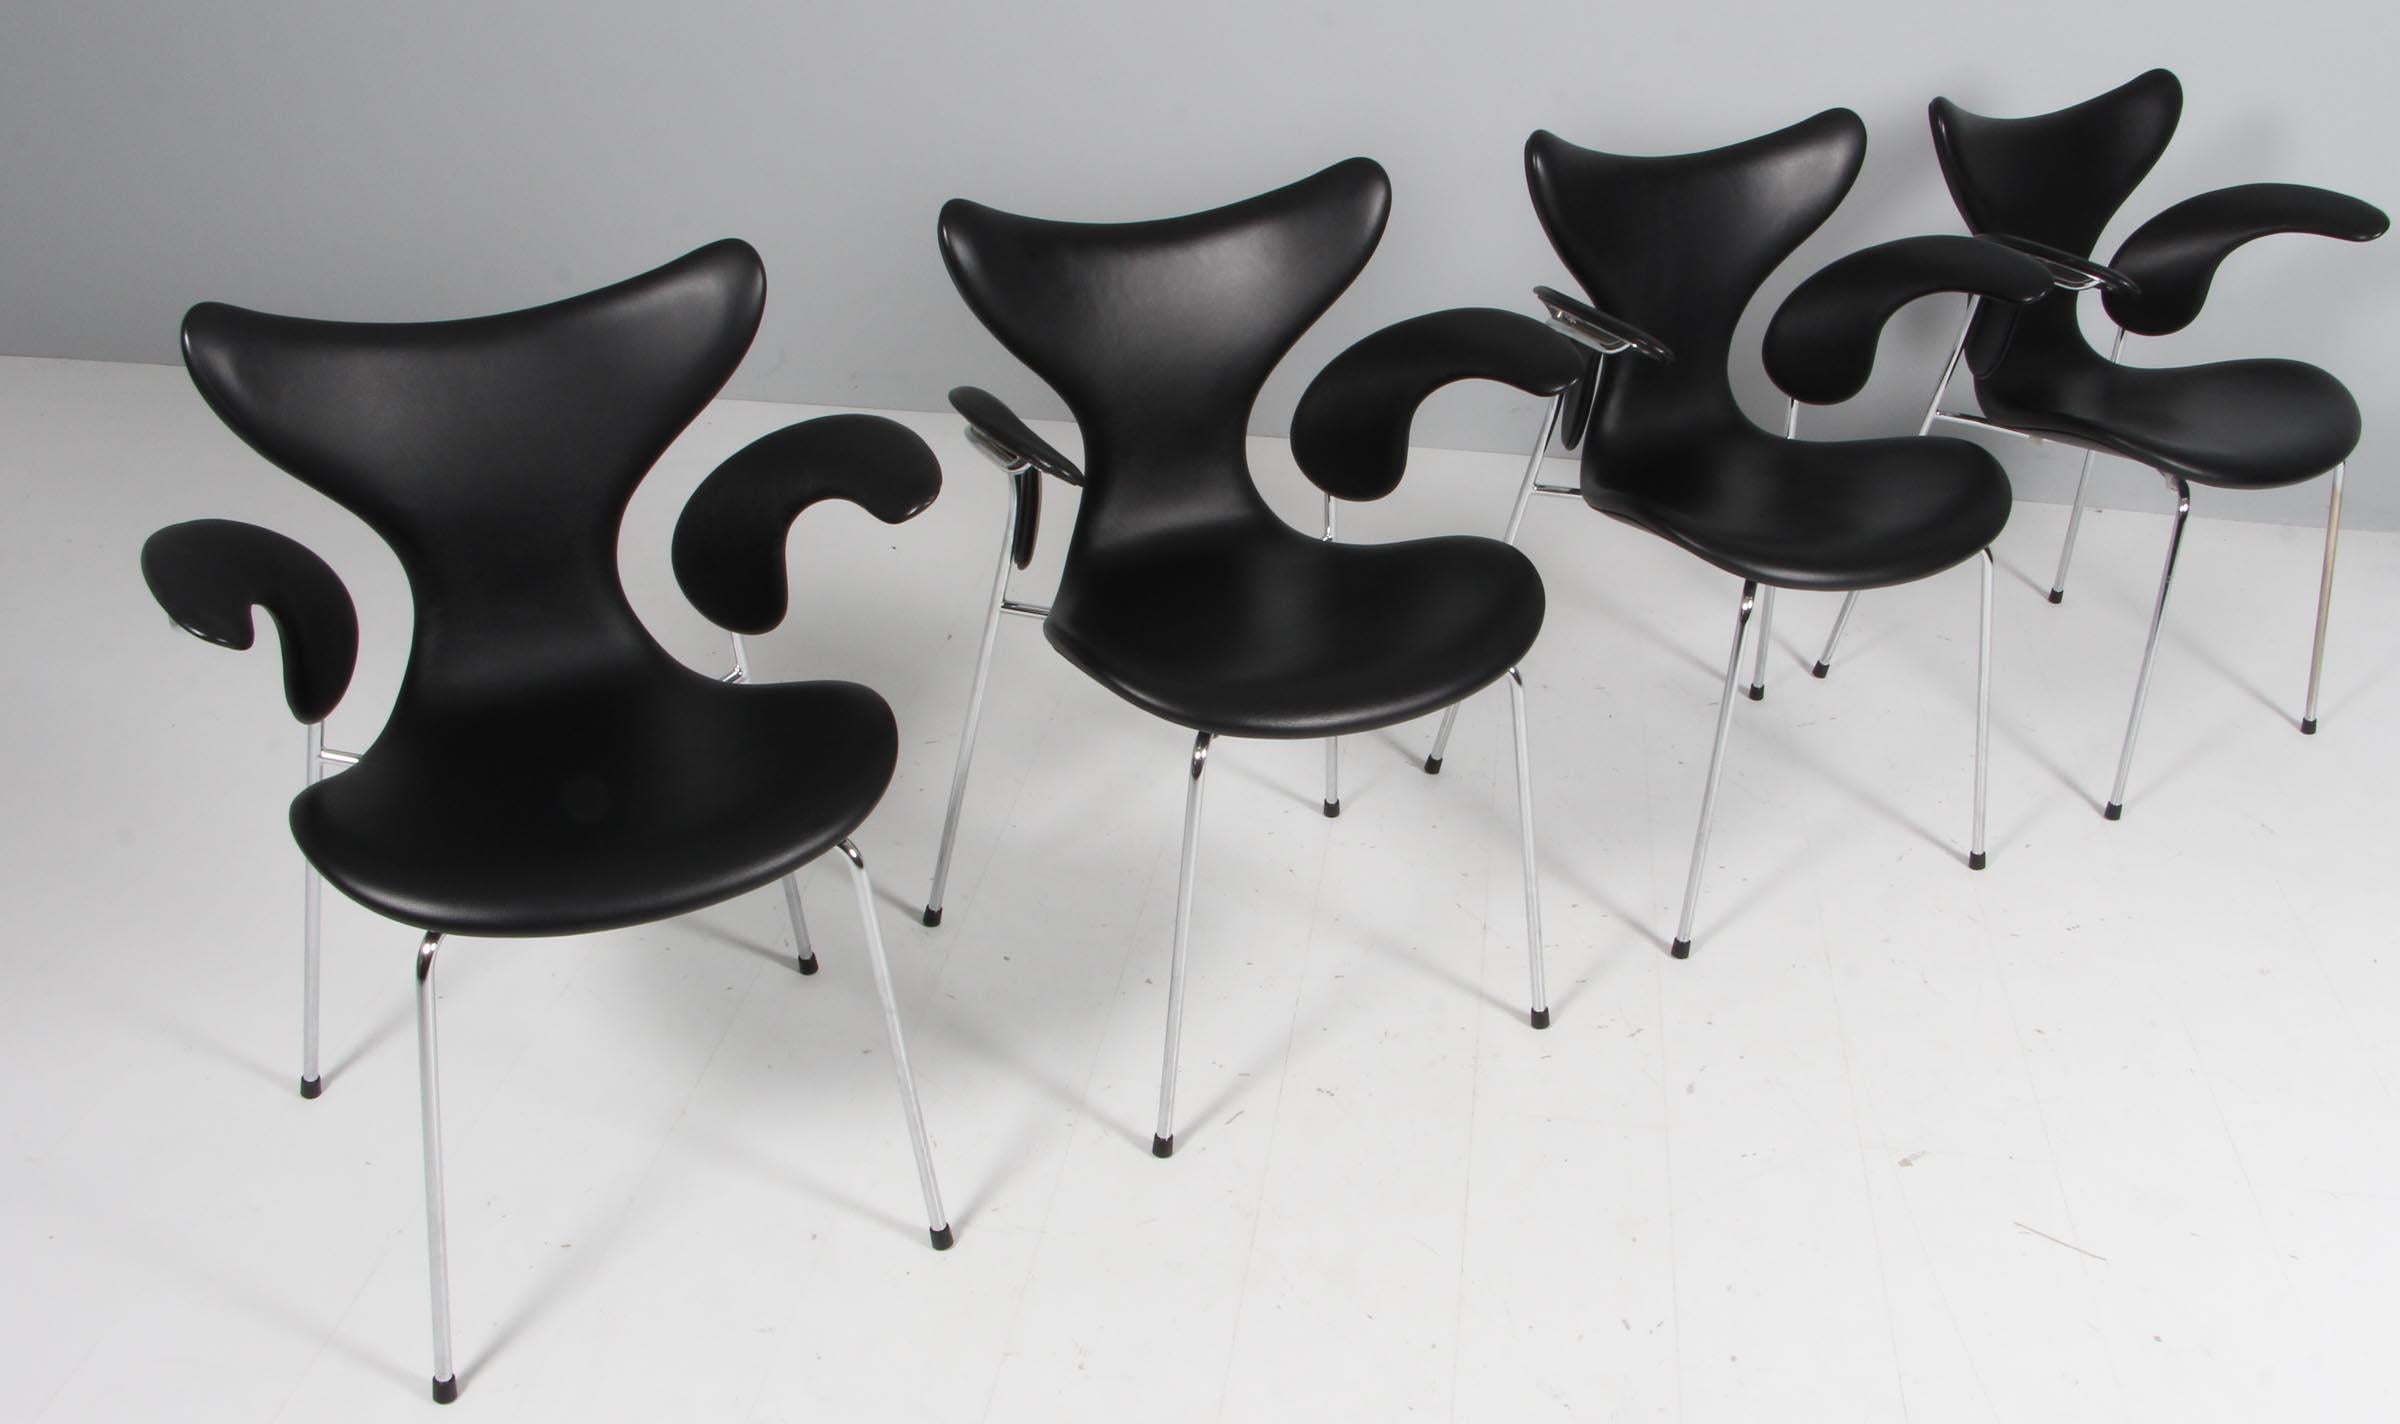 Arne Jacobsen Esstischsessel original mit schwarzem Leder gepolstert.

Sockel aus verchromtem Stahlrohr.

Modell 3208 Seagull, hergestellt von Fritz Hansen 2016. Braunes Label